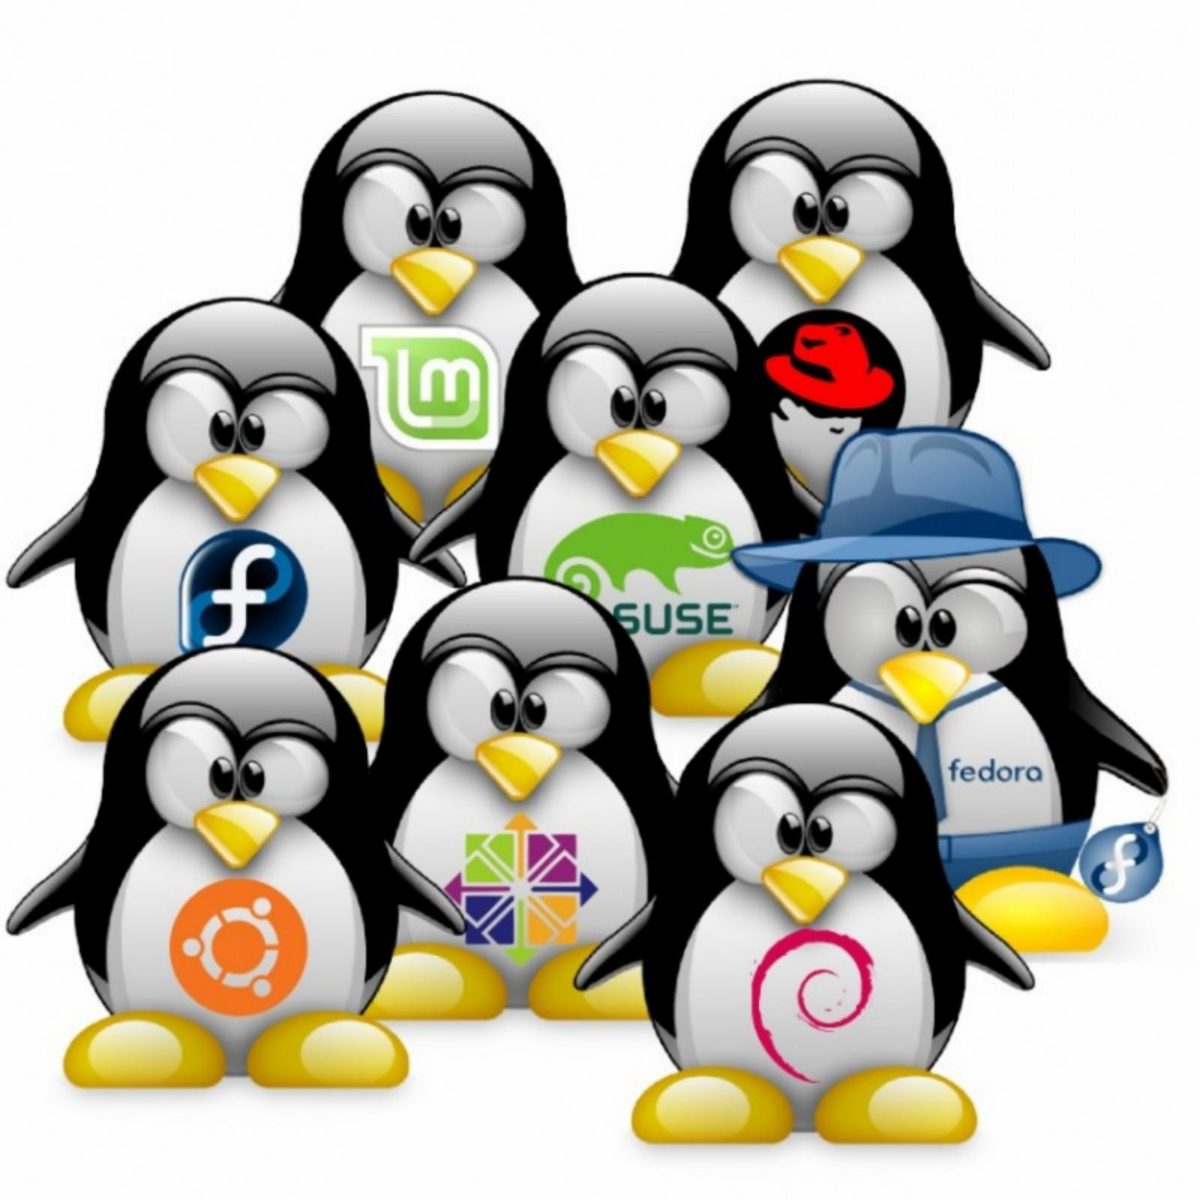 Especial Mesa Redonda : Estado actual del software libre y GNU/Linux, terminado 2017 y comenzando 2018.